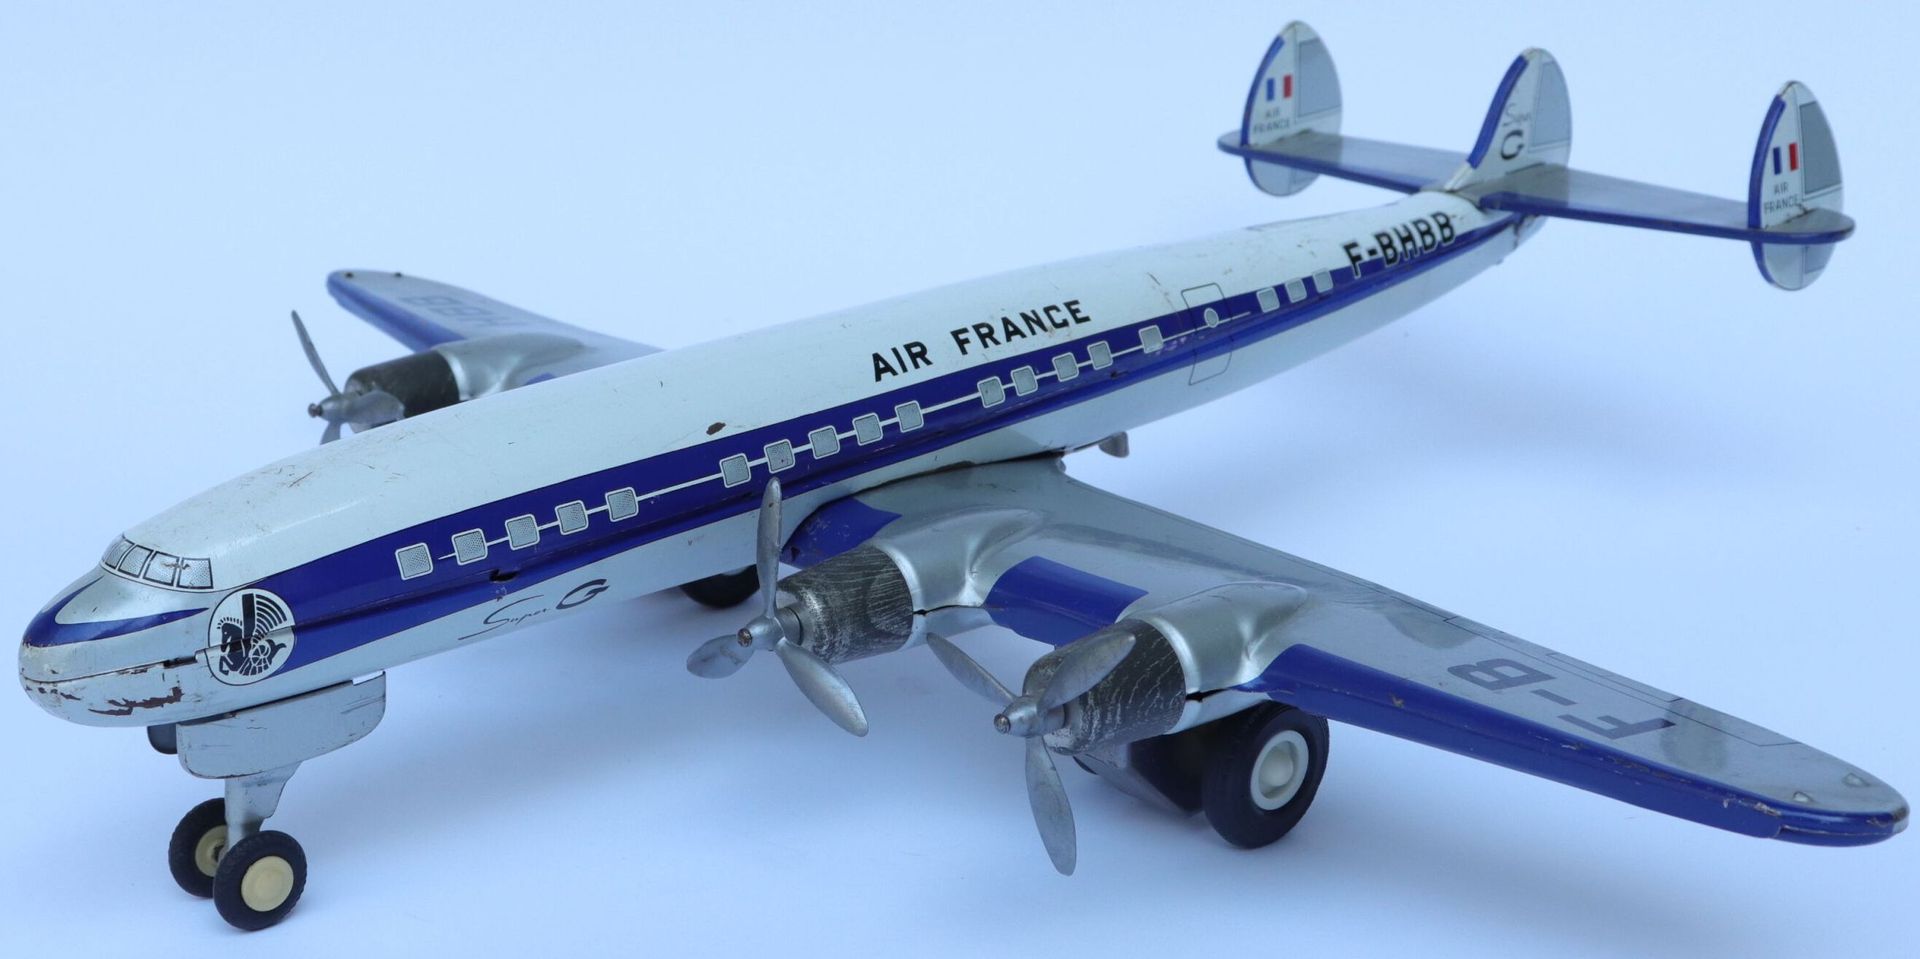 Null 洛克希德公司的超级星座航空。

平版印刷的金属板玩具飞机，注册号为F-BHBB。

摩擦机制。约1961年由JOUSTRA公司制造。

翼展：50厘米&hellip;